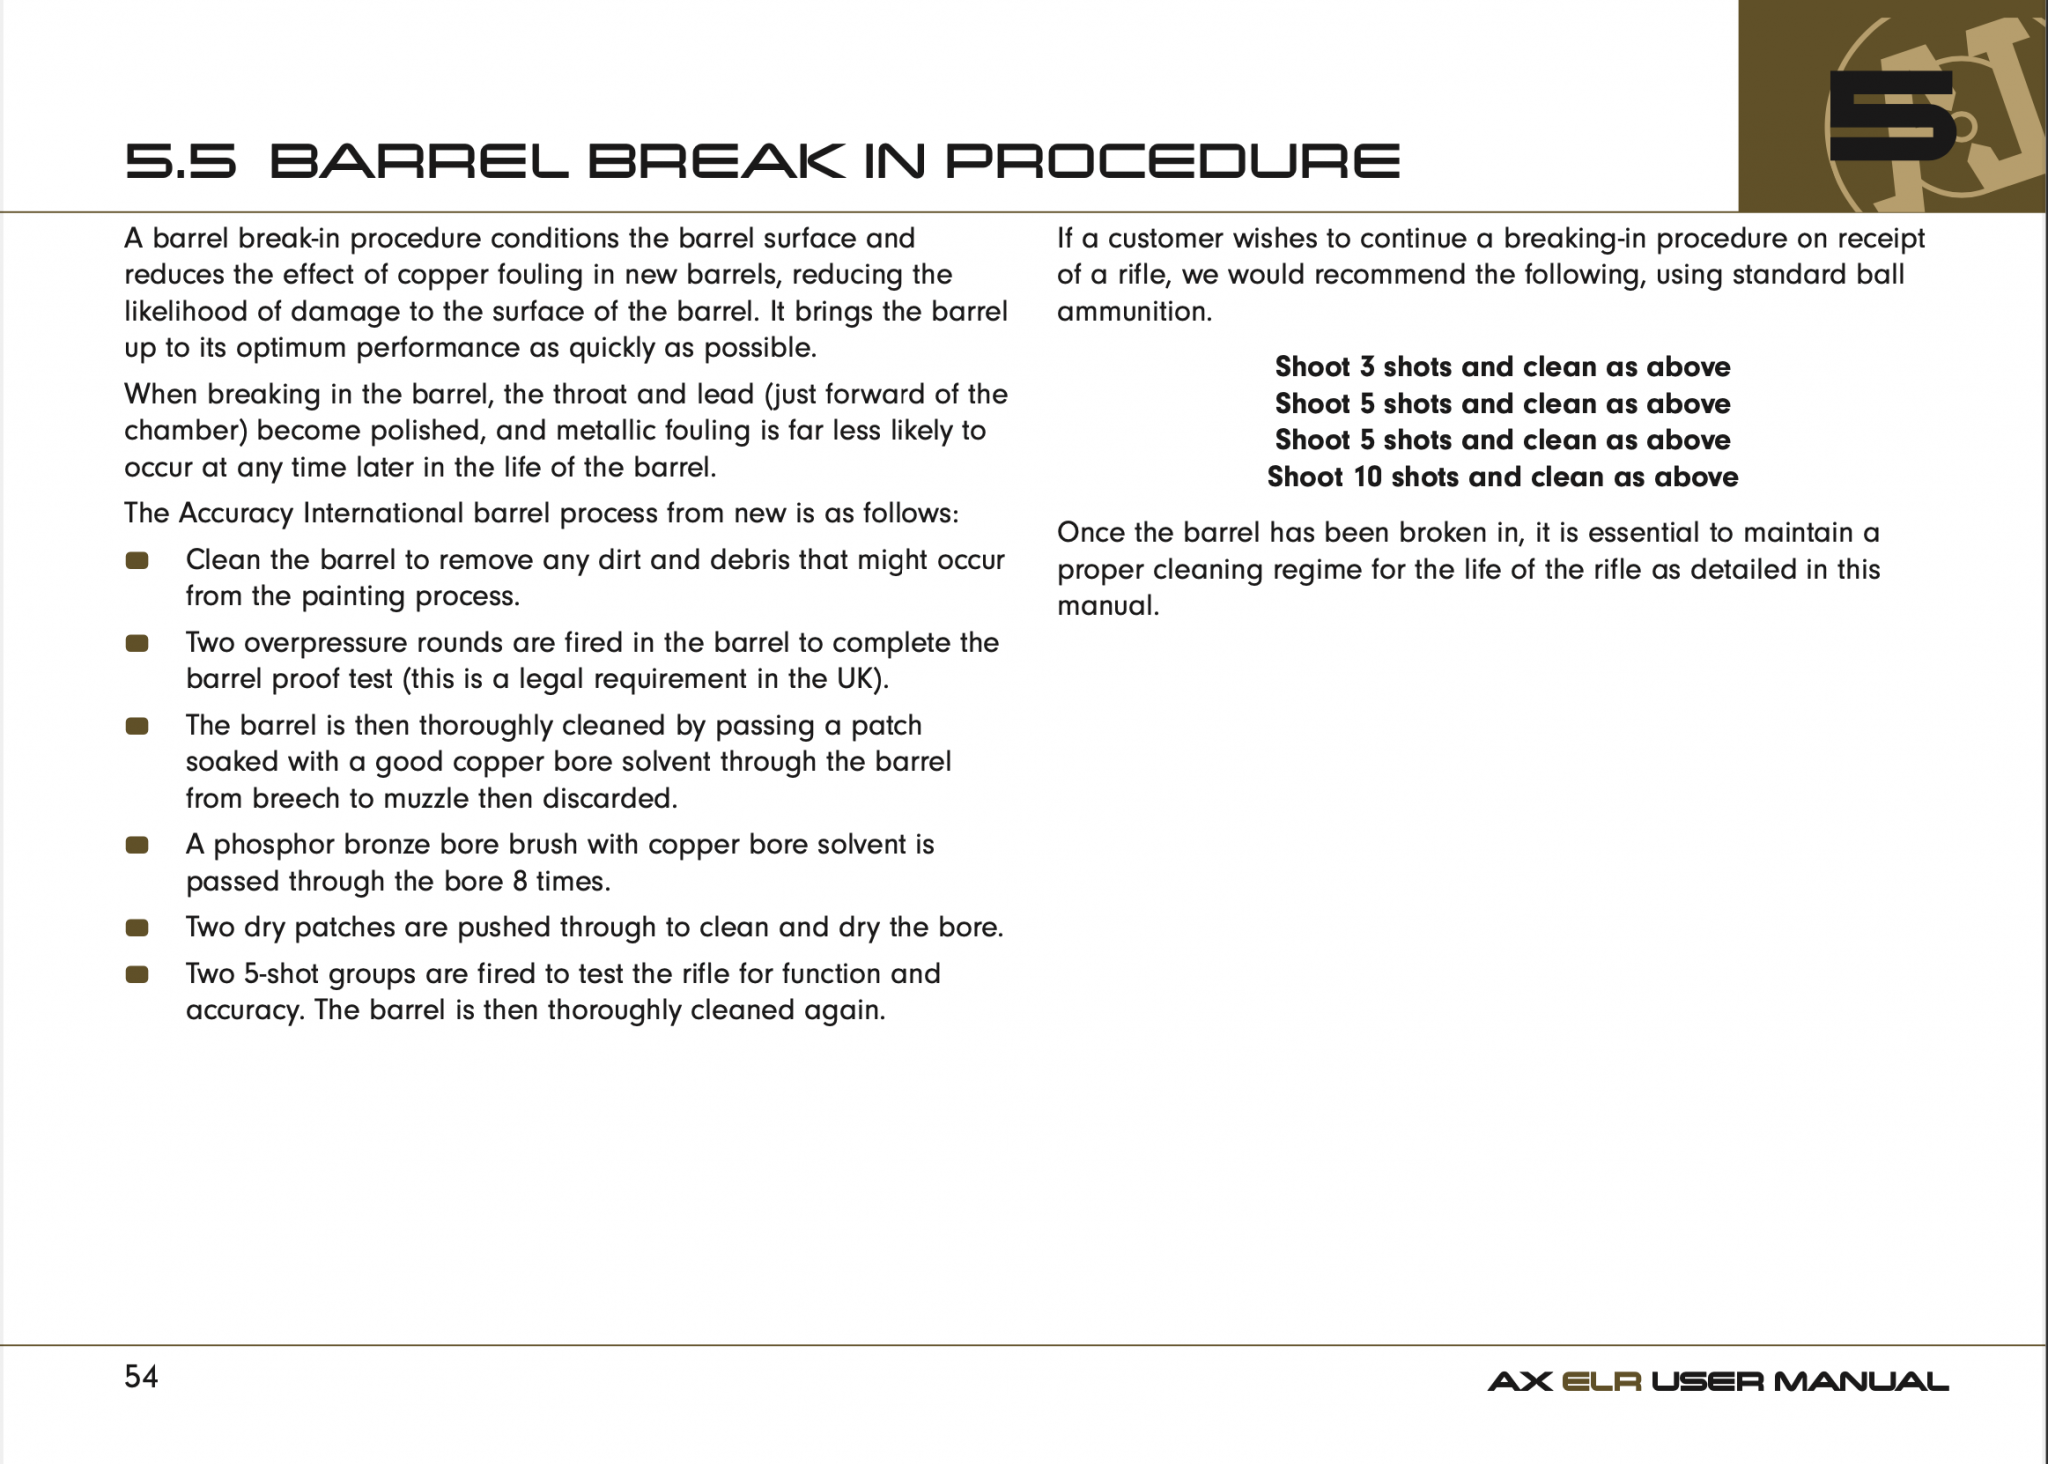 Barrel Break In Procedure.png